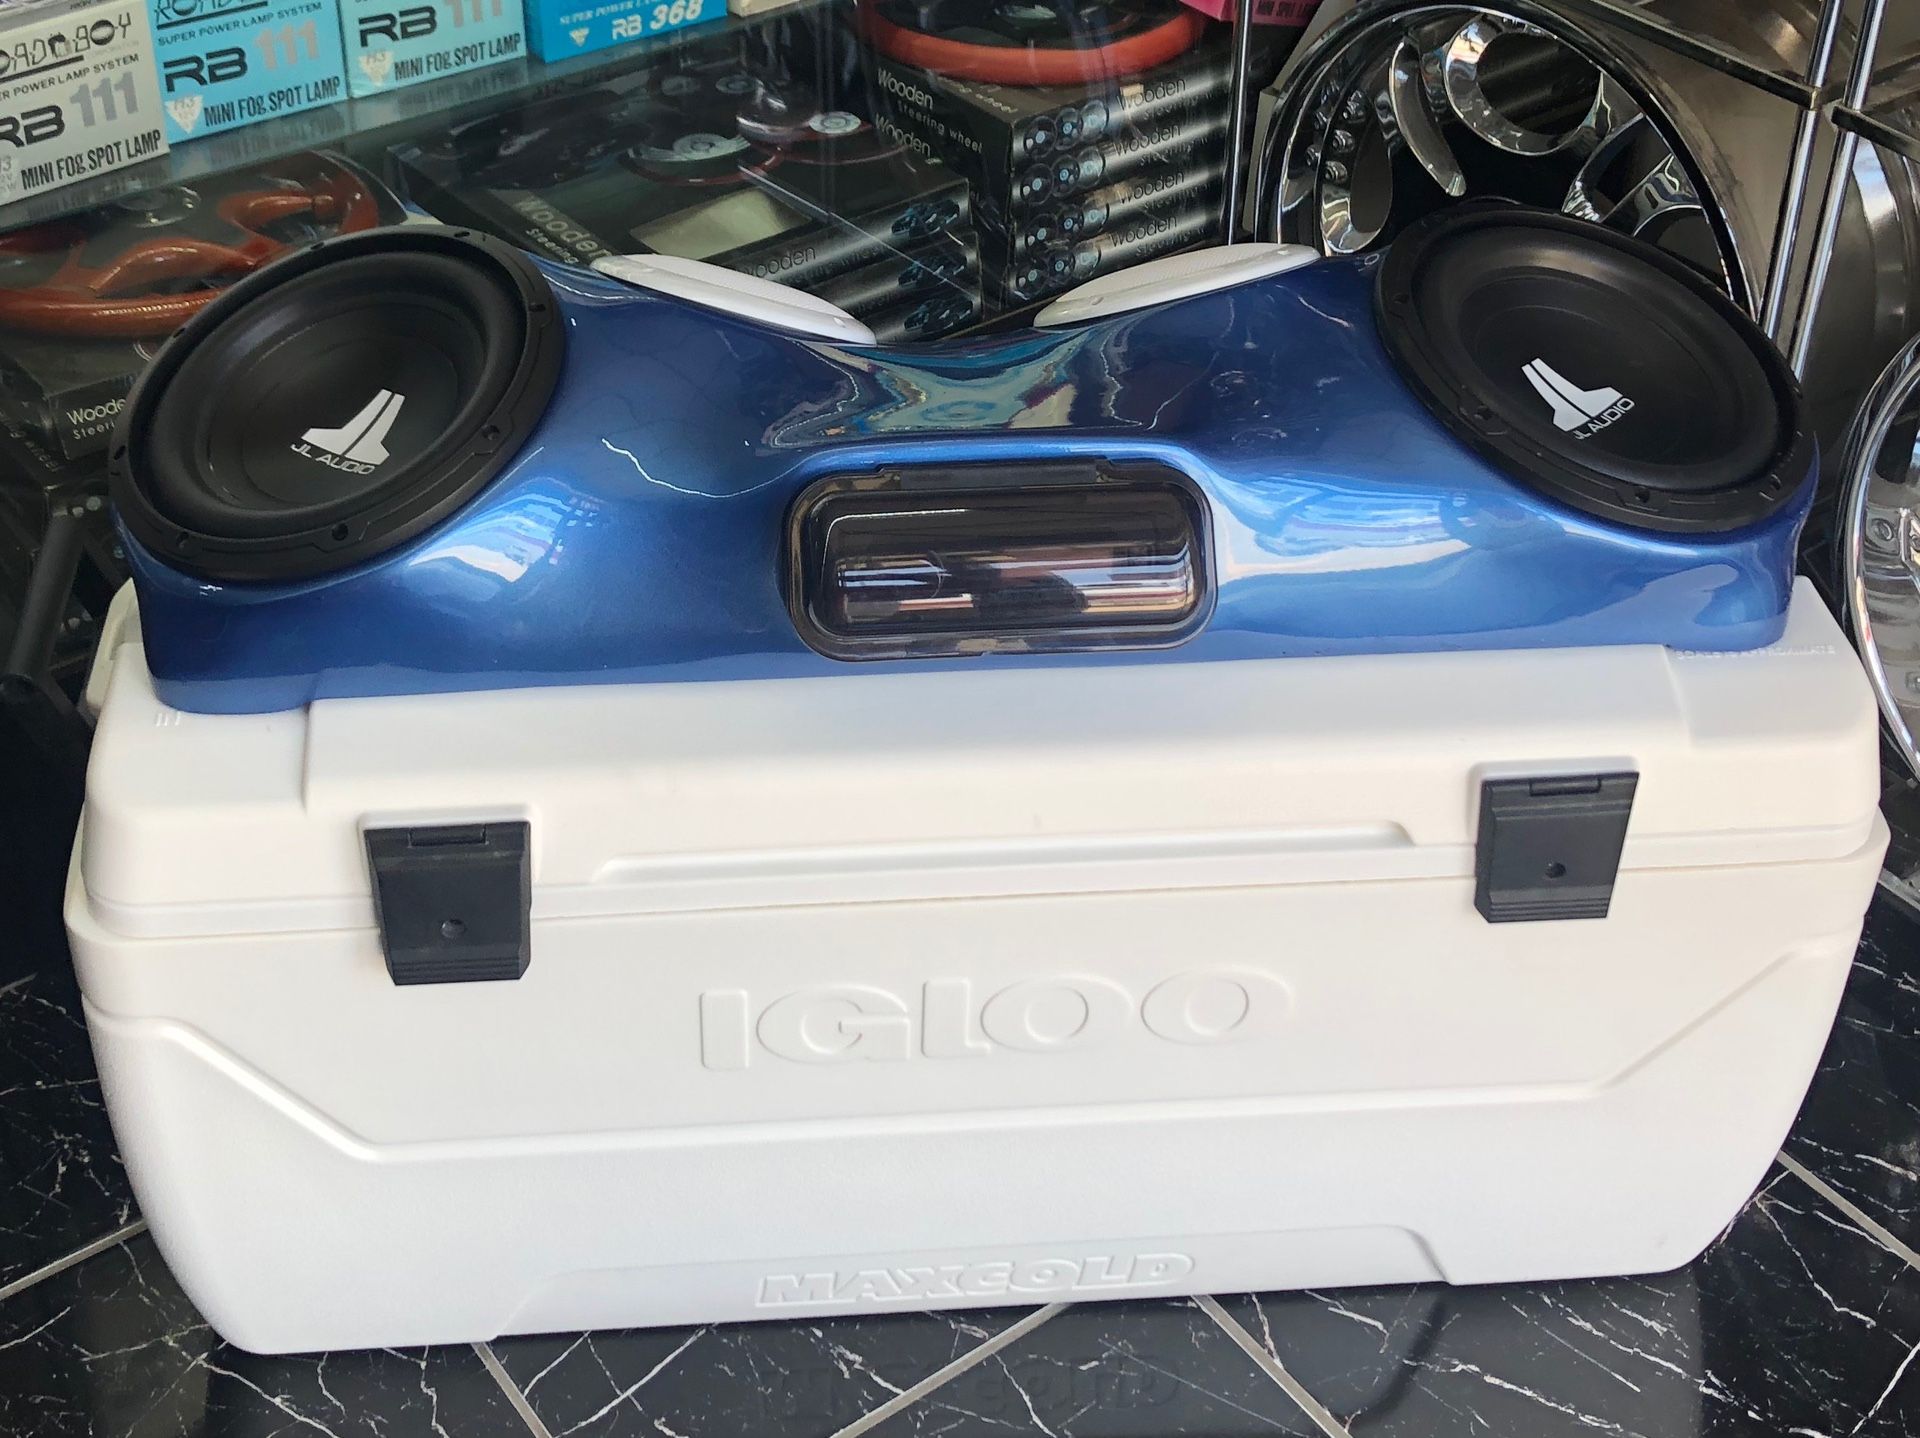 Custom JL Audio speaker box ice chest